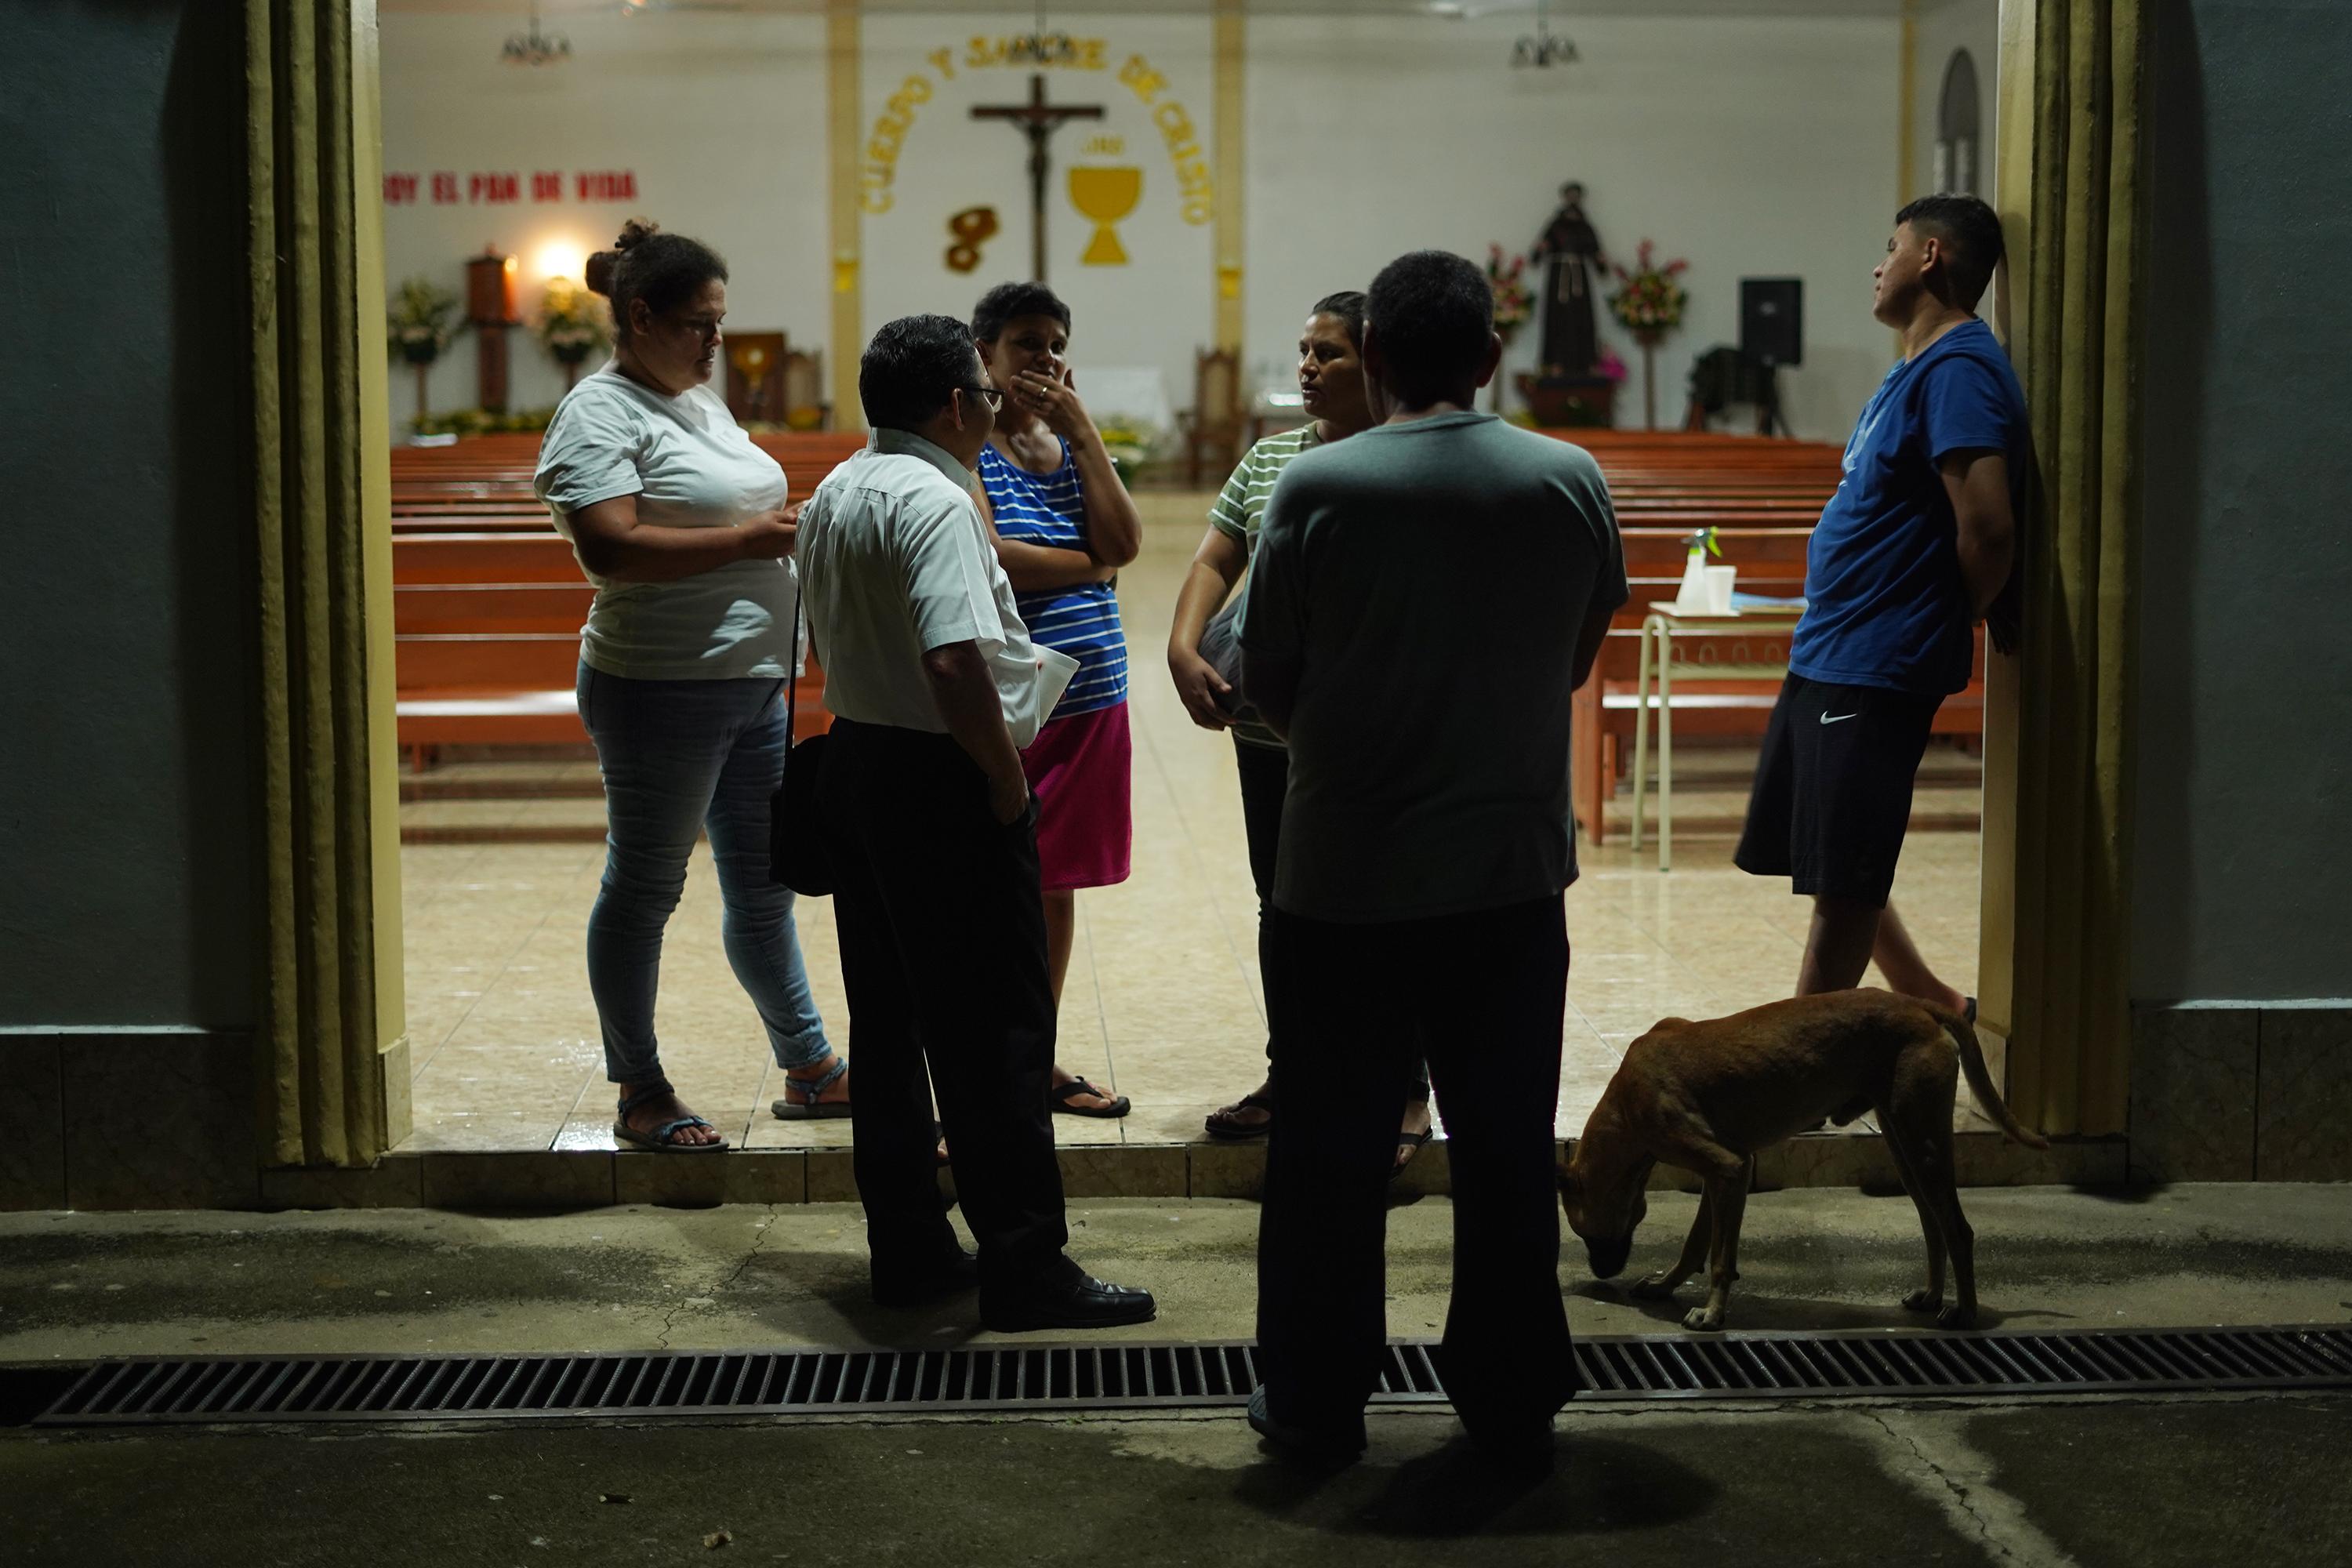 La comunidad de Guarjila, Chalatenango, se reunió la noche del lunes 25 de julio en la iglesia. Mantuvieron un diálogo de más de una hora para exponer su preocupación por la reciente captura de 21 hombres de esa comunidad. Foto de El Faro: Víctor Peña. 